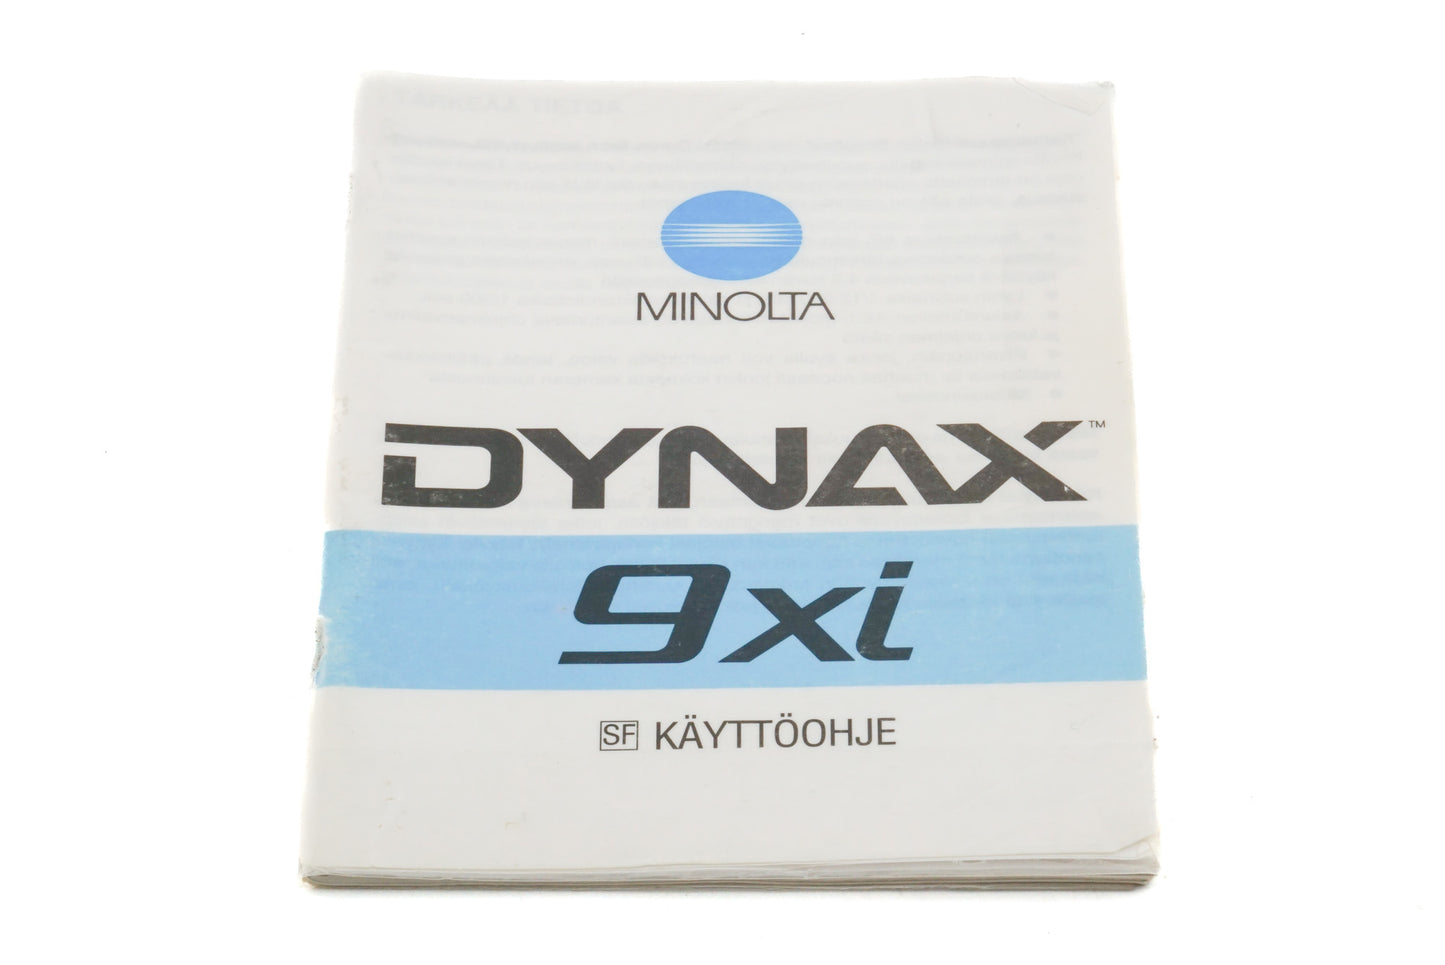 Minolta Dynax 9xi Instructions